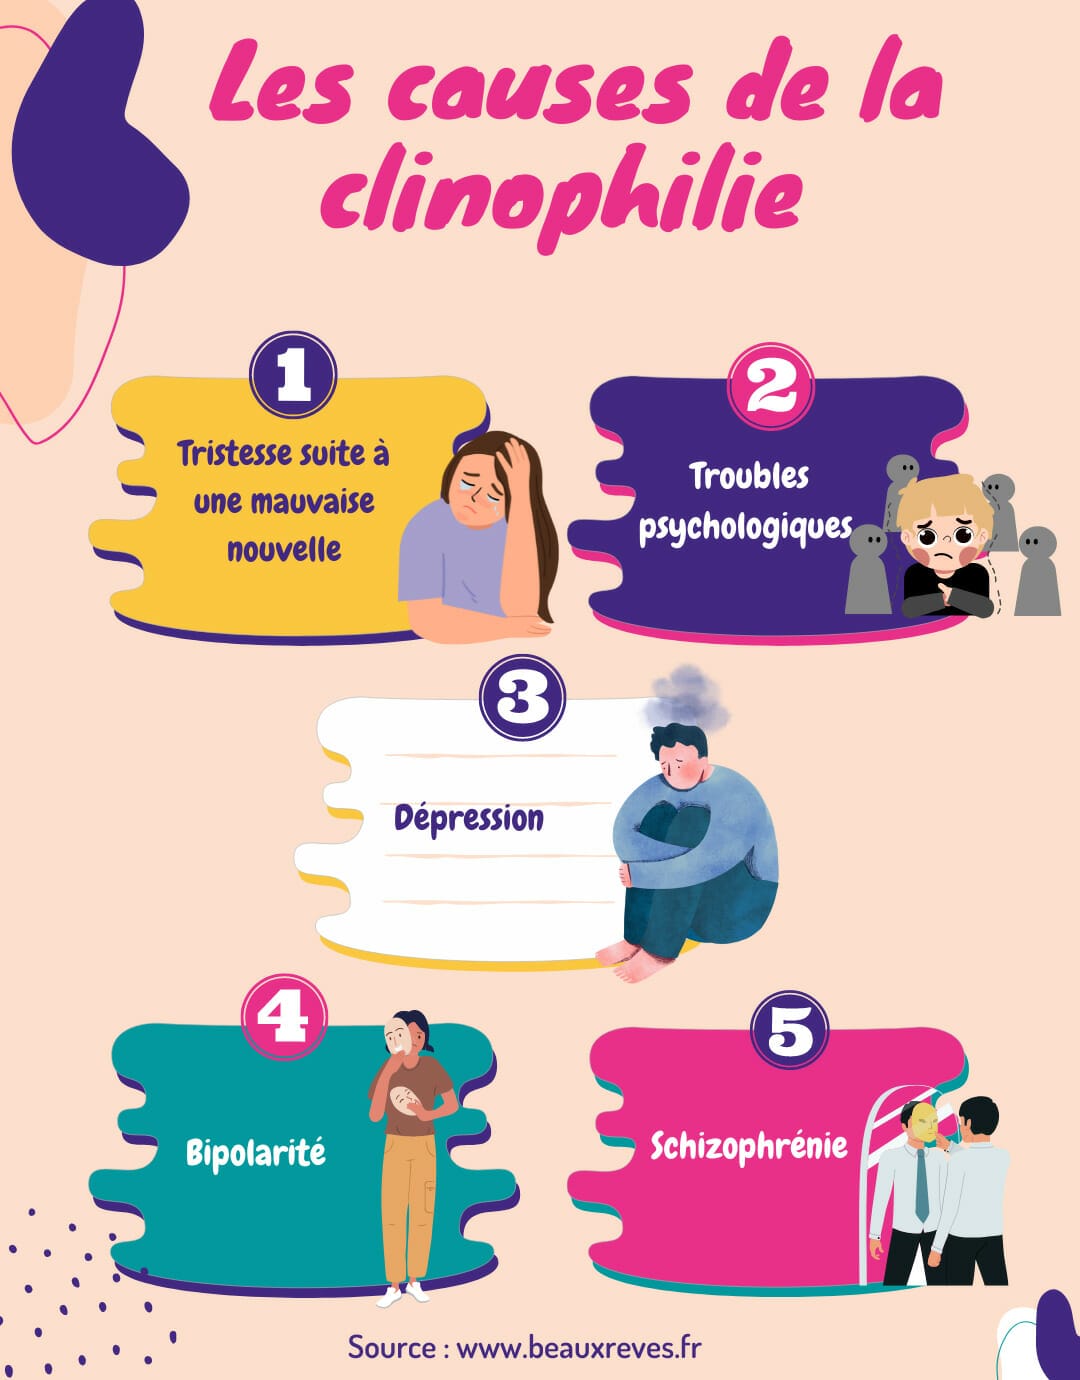 Clinophilie : Définition, causes, symptômes, traitement 5